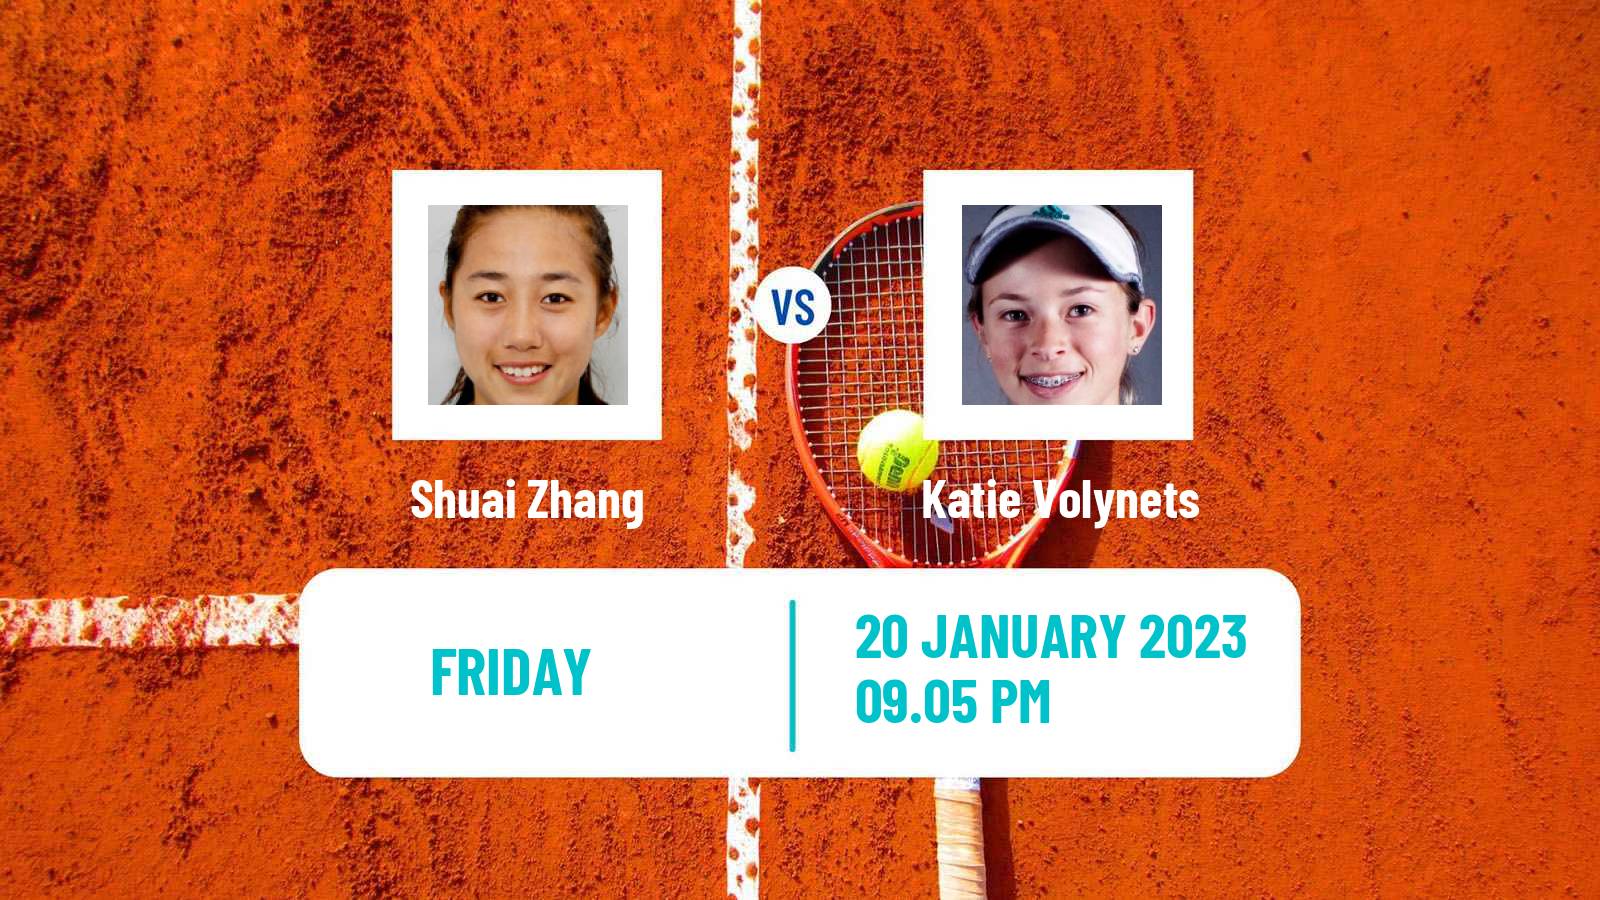 Tennis WTA Australian Open Shuai Zhang - Katie Volynets